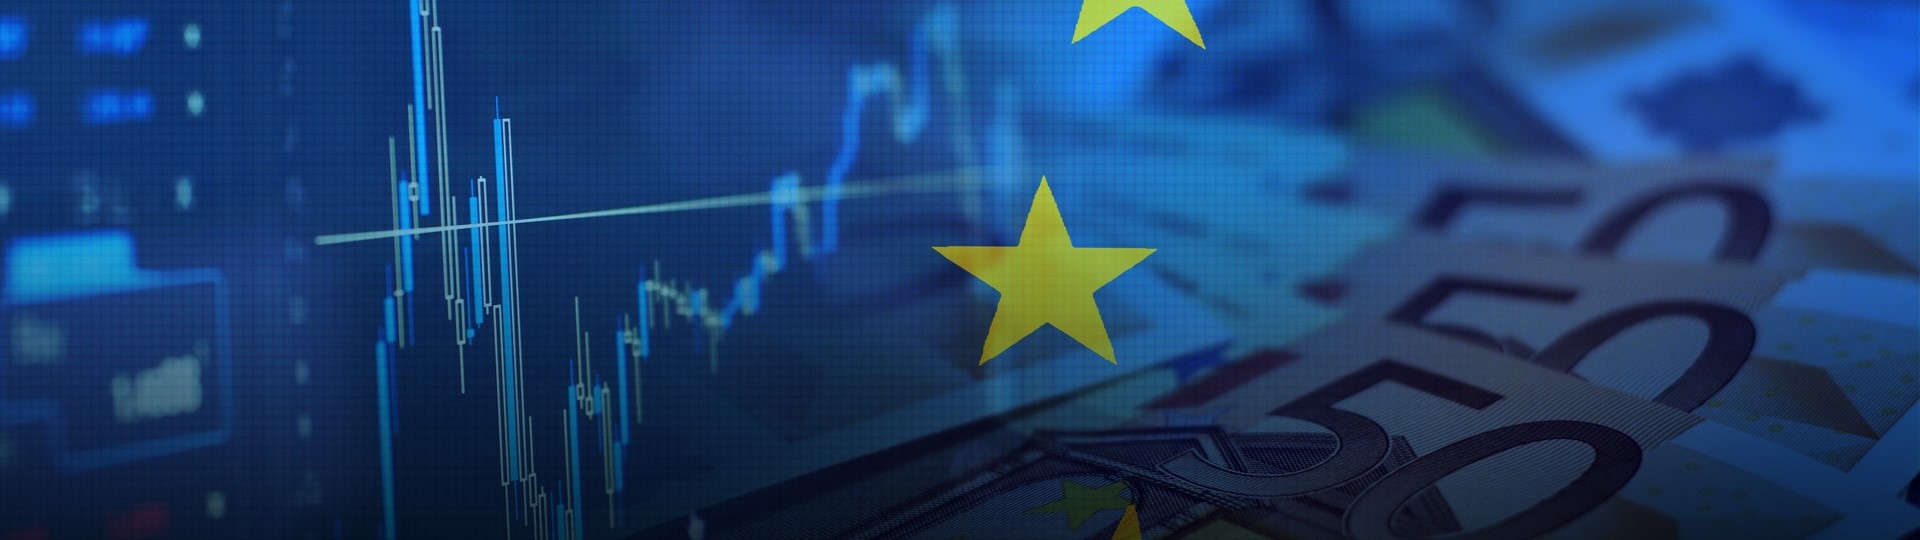 Evropské akcie jsou na rekordu, přispěl k tomu i růst cen komodit